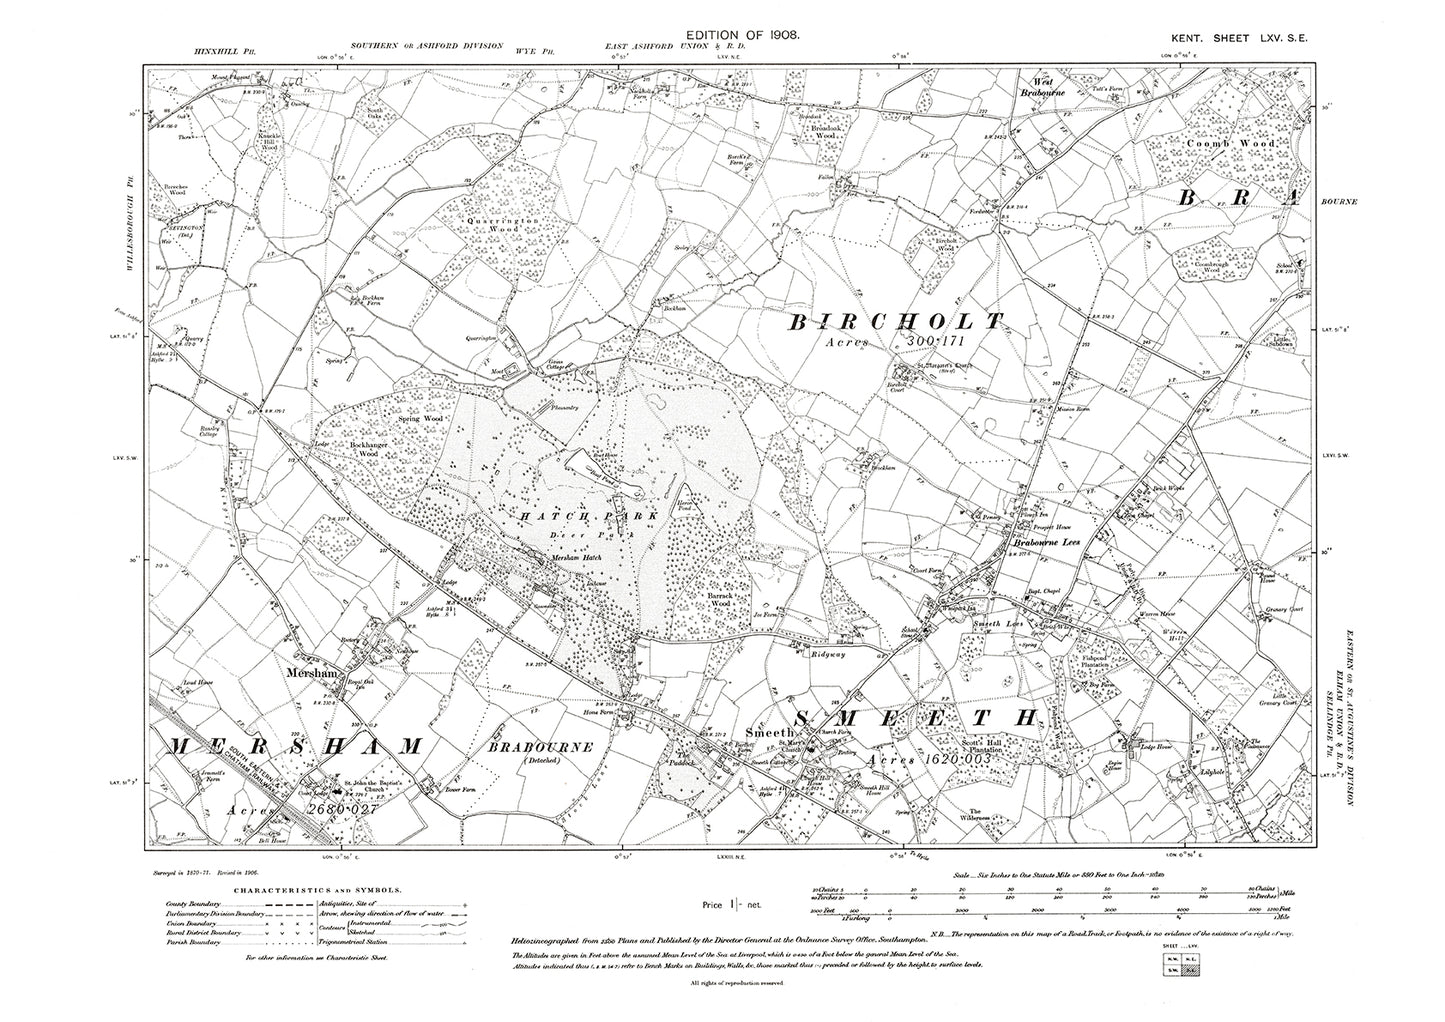 Mersham, Brabourne Lees, Smeeth, Bircholt, old map Kent 1908: 65SE